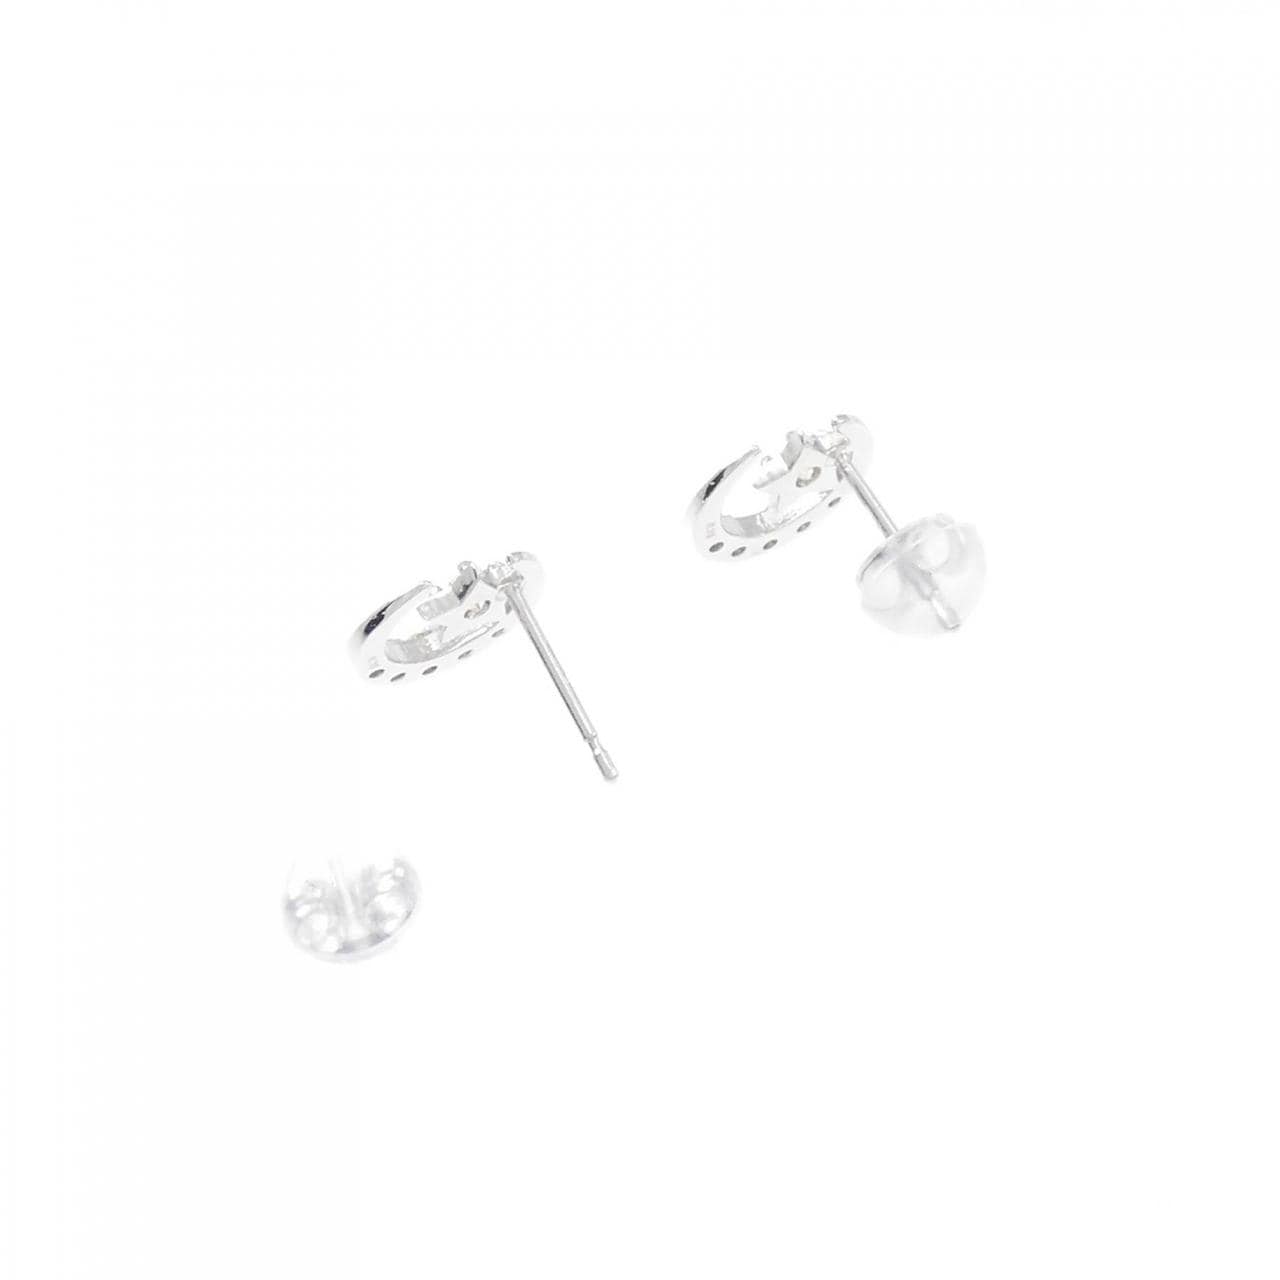 K18WG Star x Moon Diamond Earrings 0.20CT